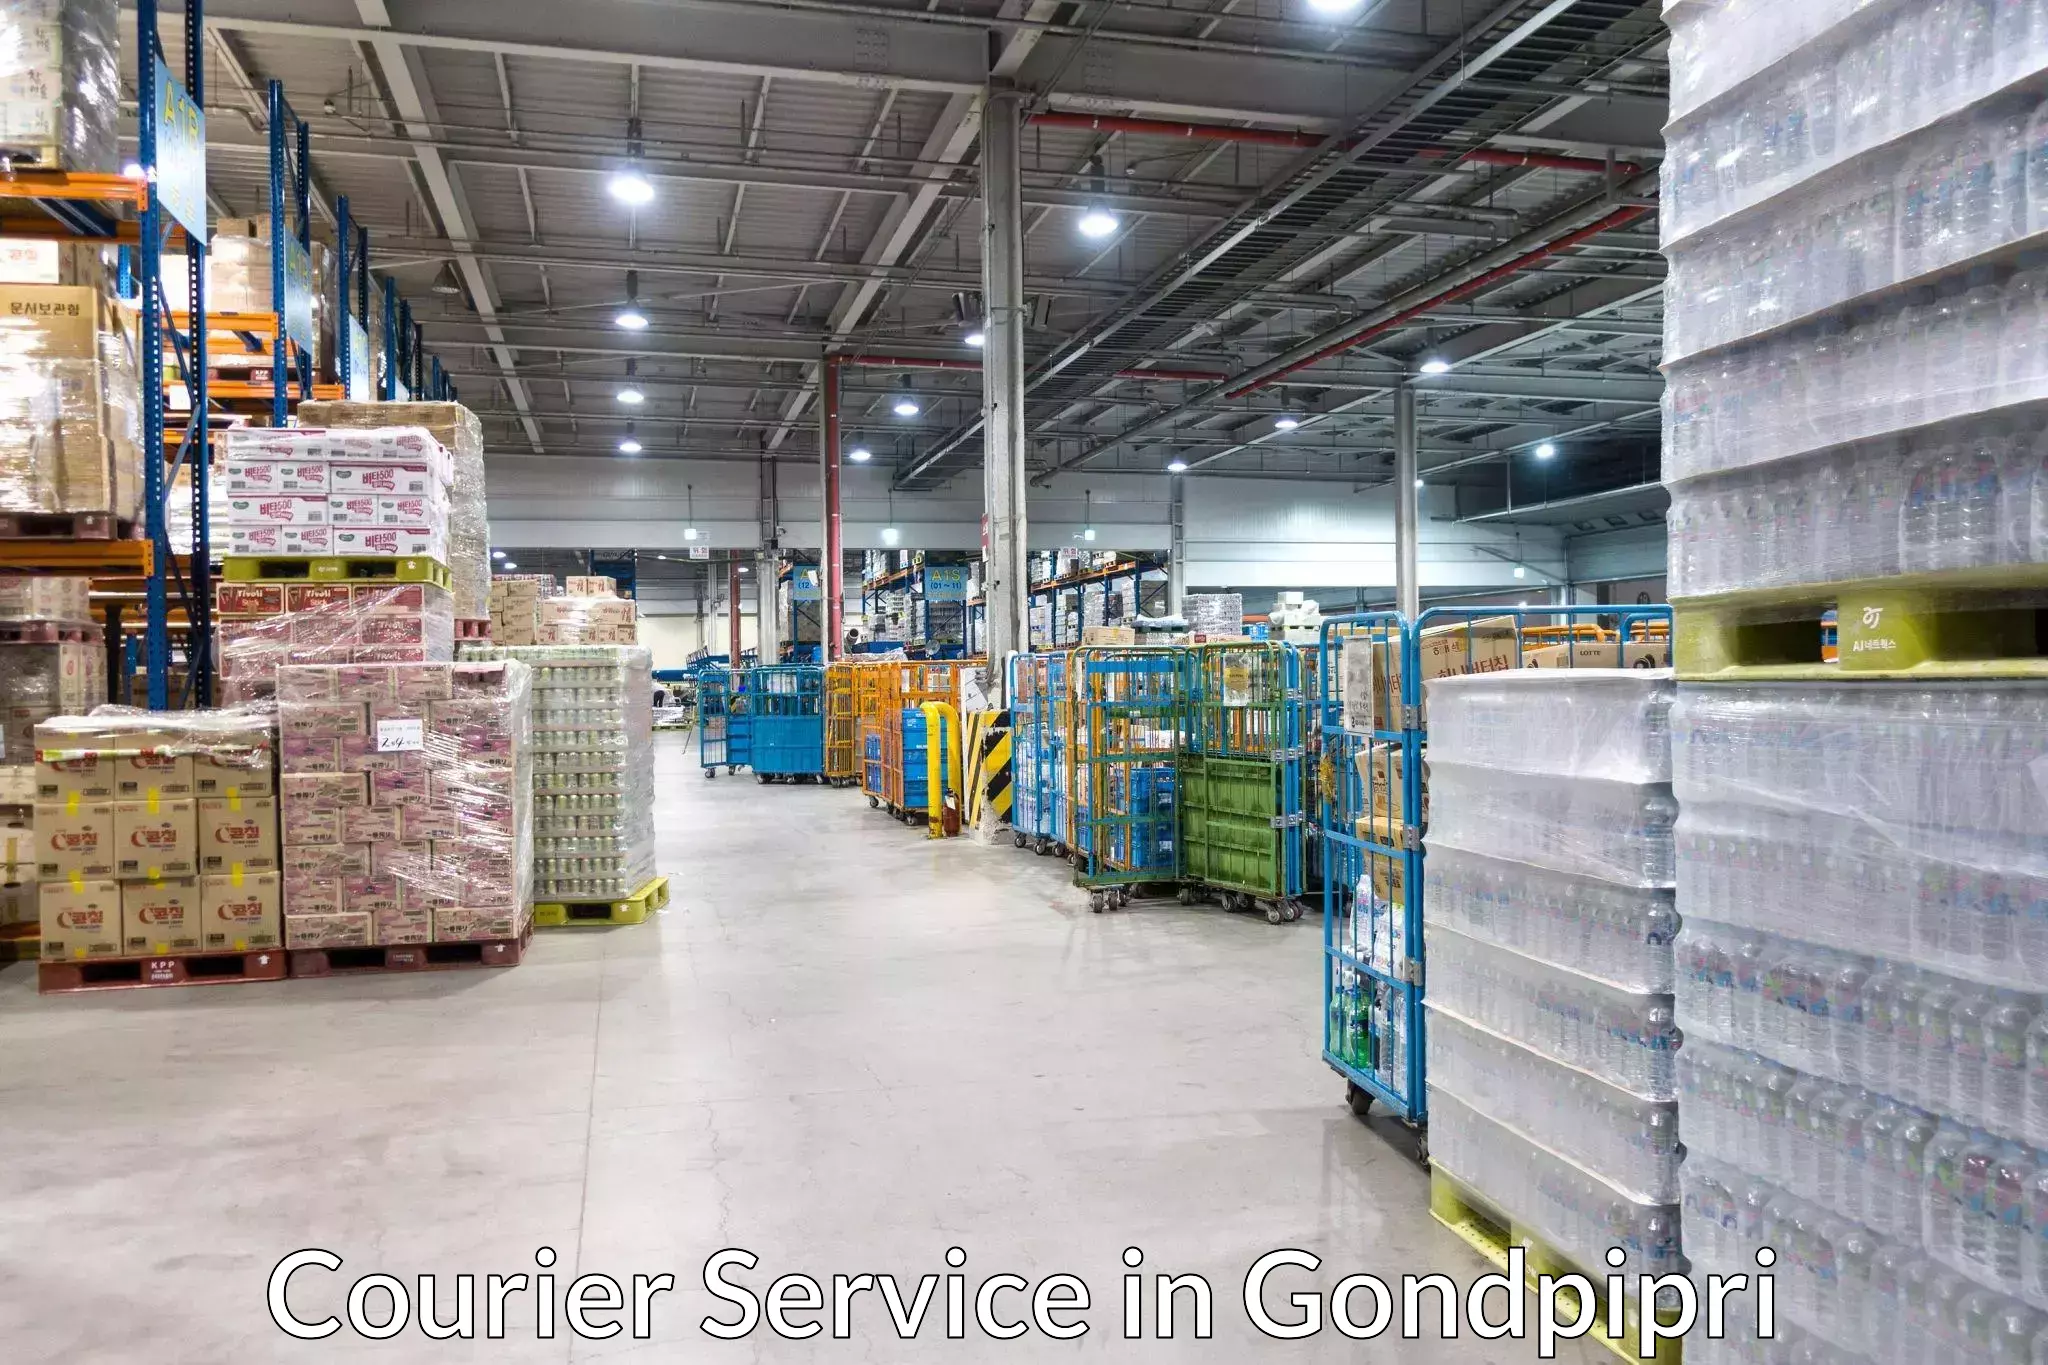 Cargo delivery service in Gondpipri